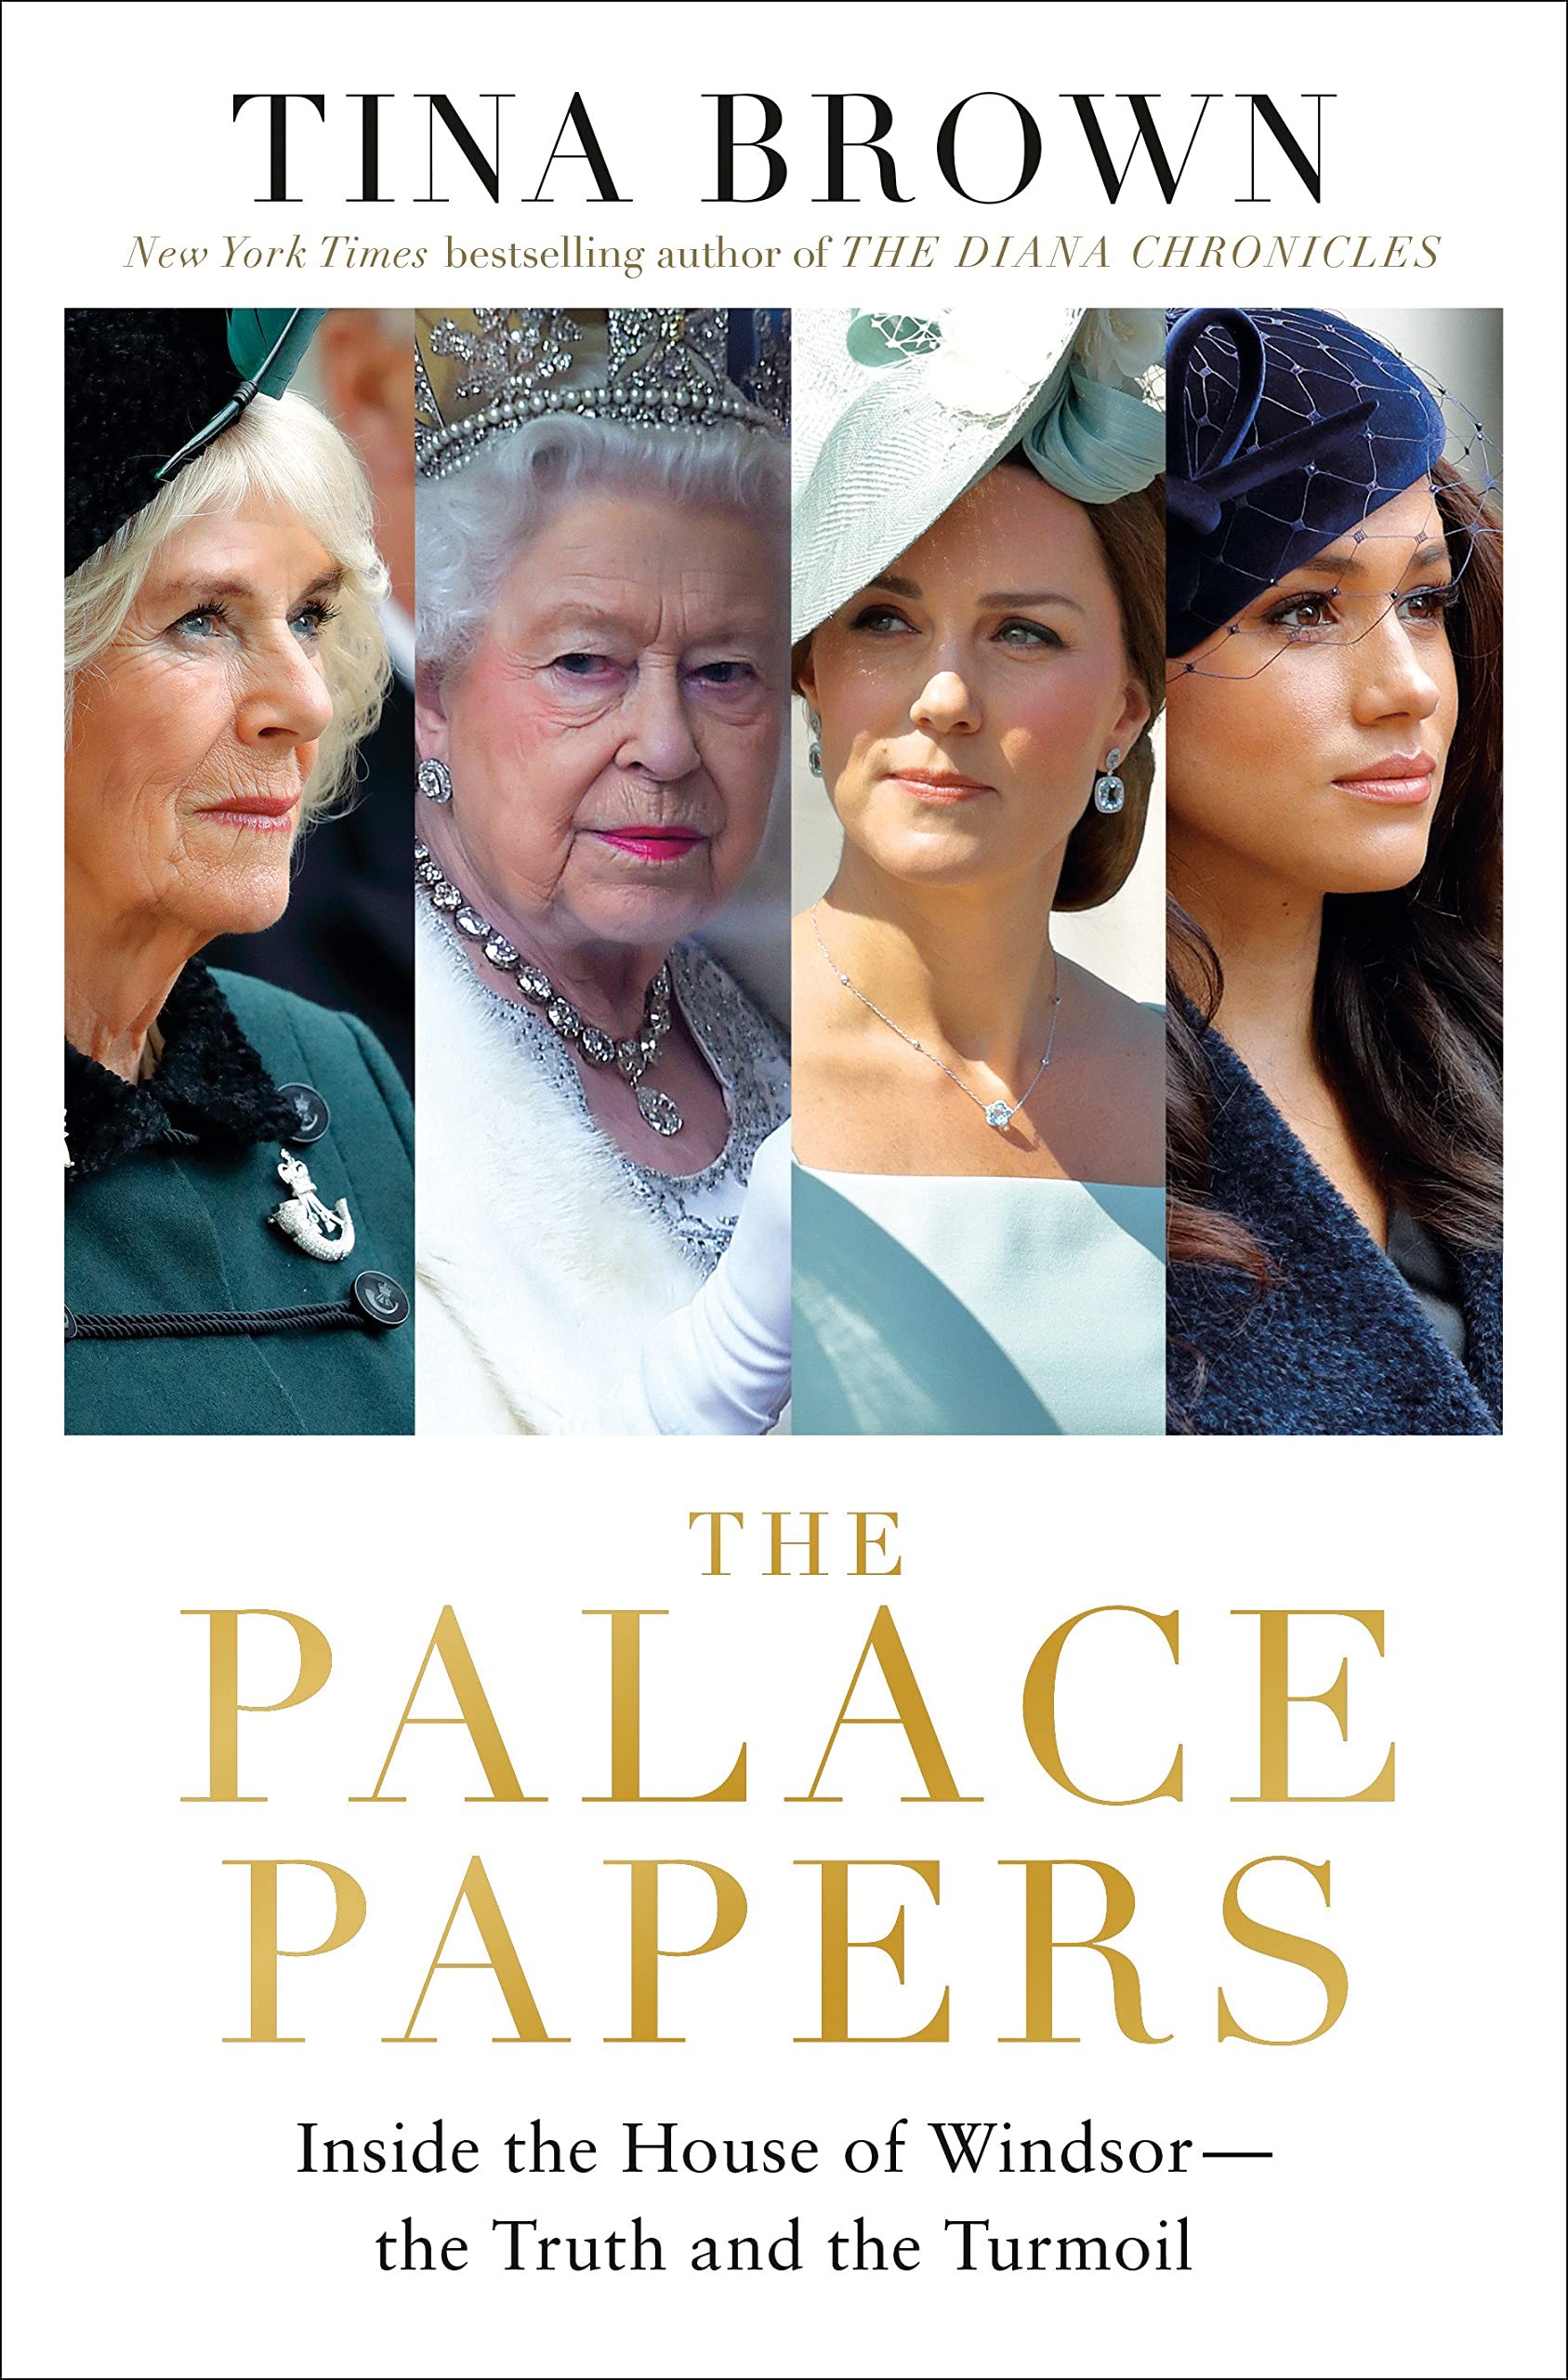 A capa de The Palace Papers, obra de Tina Brown sobre a Família Real Britânica (Foto: Divulgação)